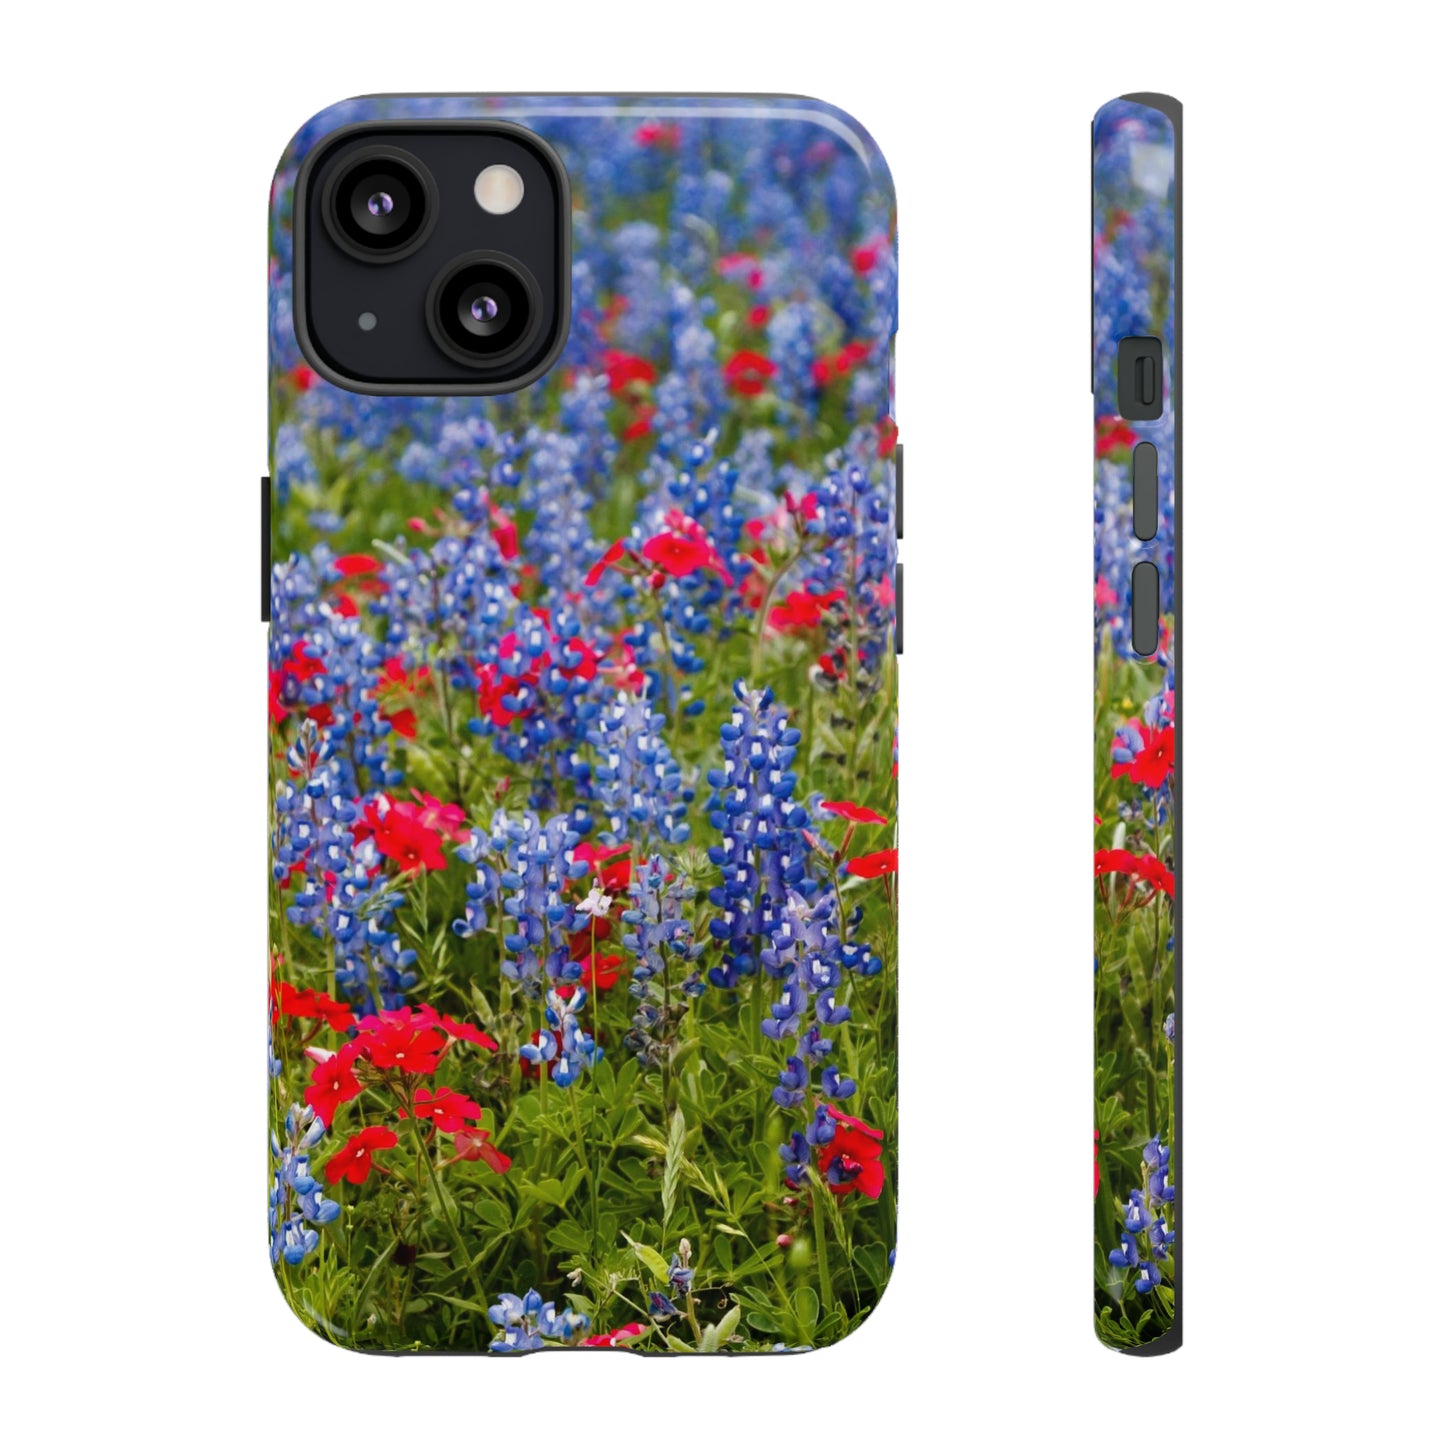 IPhone Case, Texas Bluebonnet IPhone Case, Colorful Phone Case, IPhone Protector Case, IPhone Cover